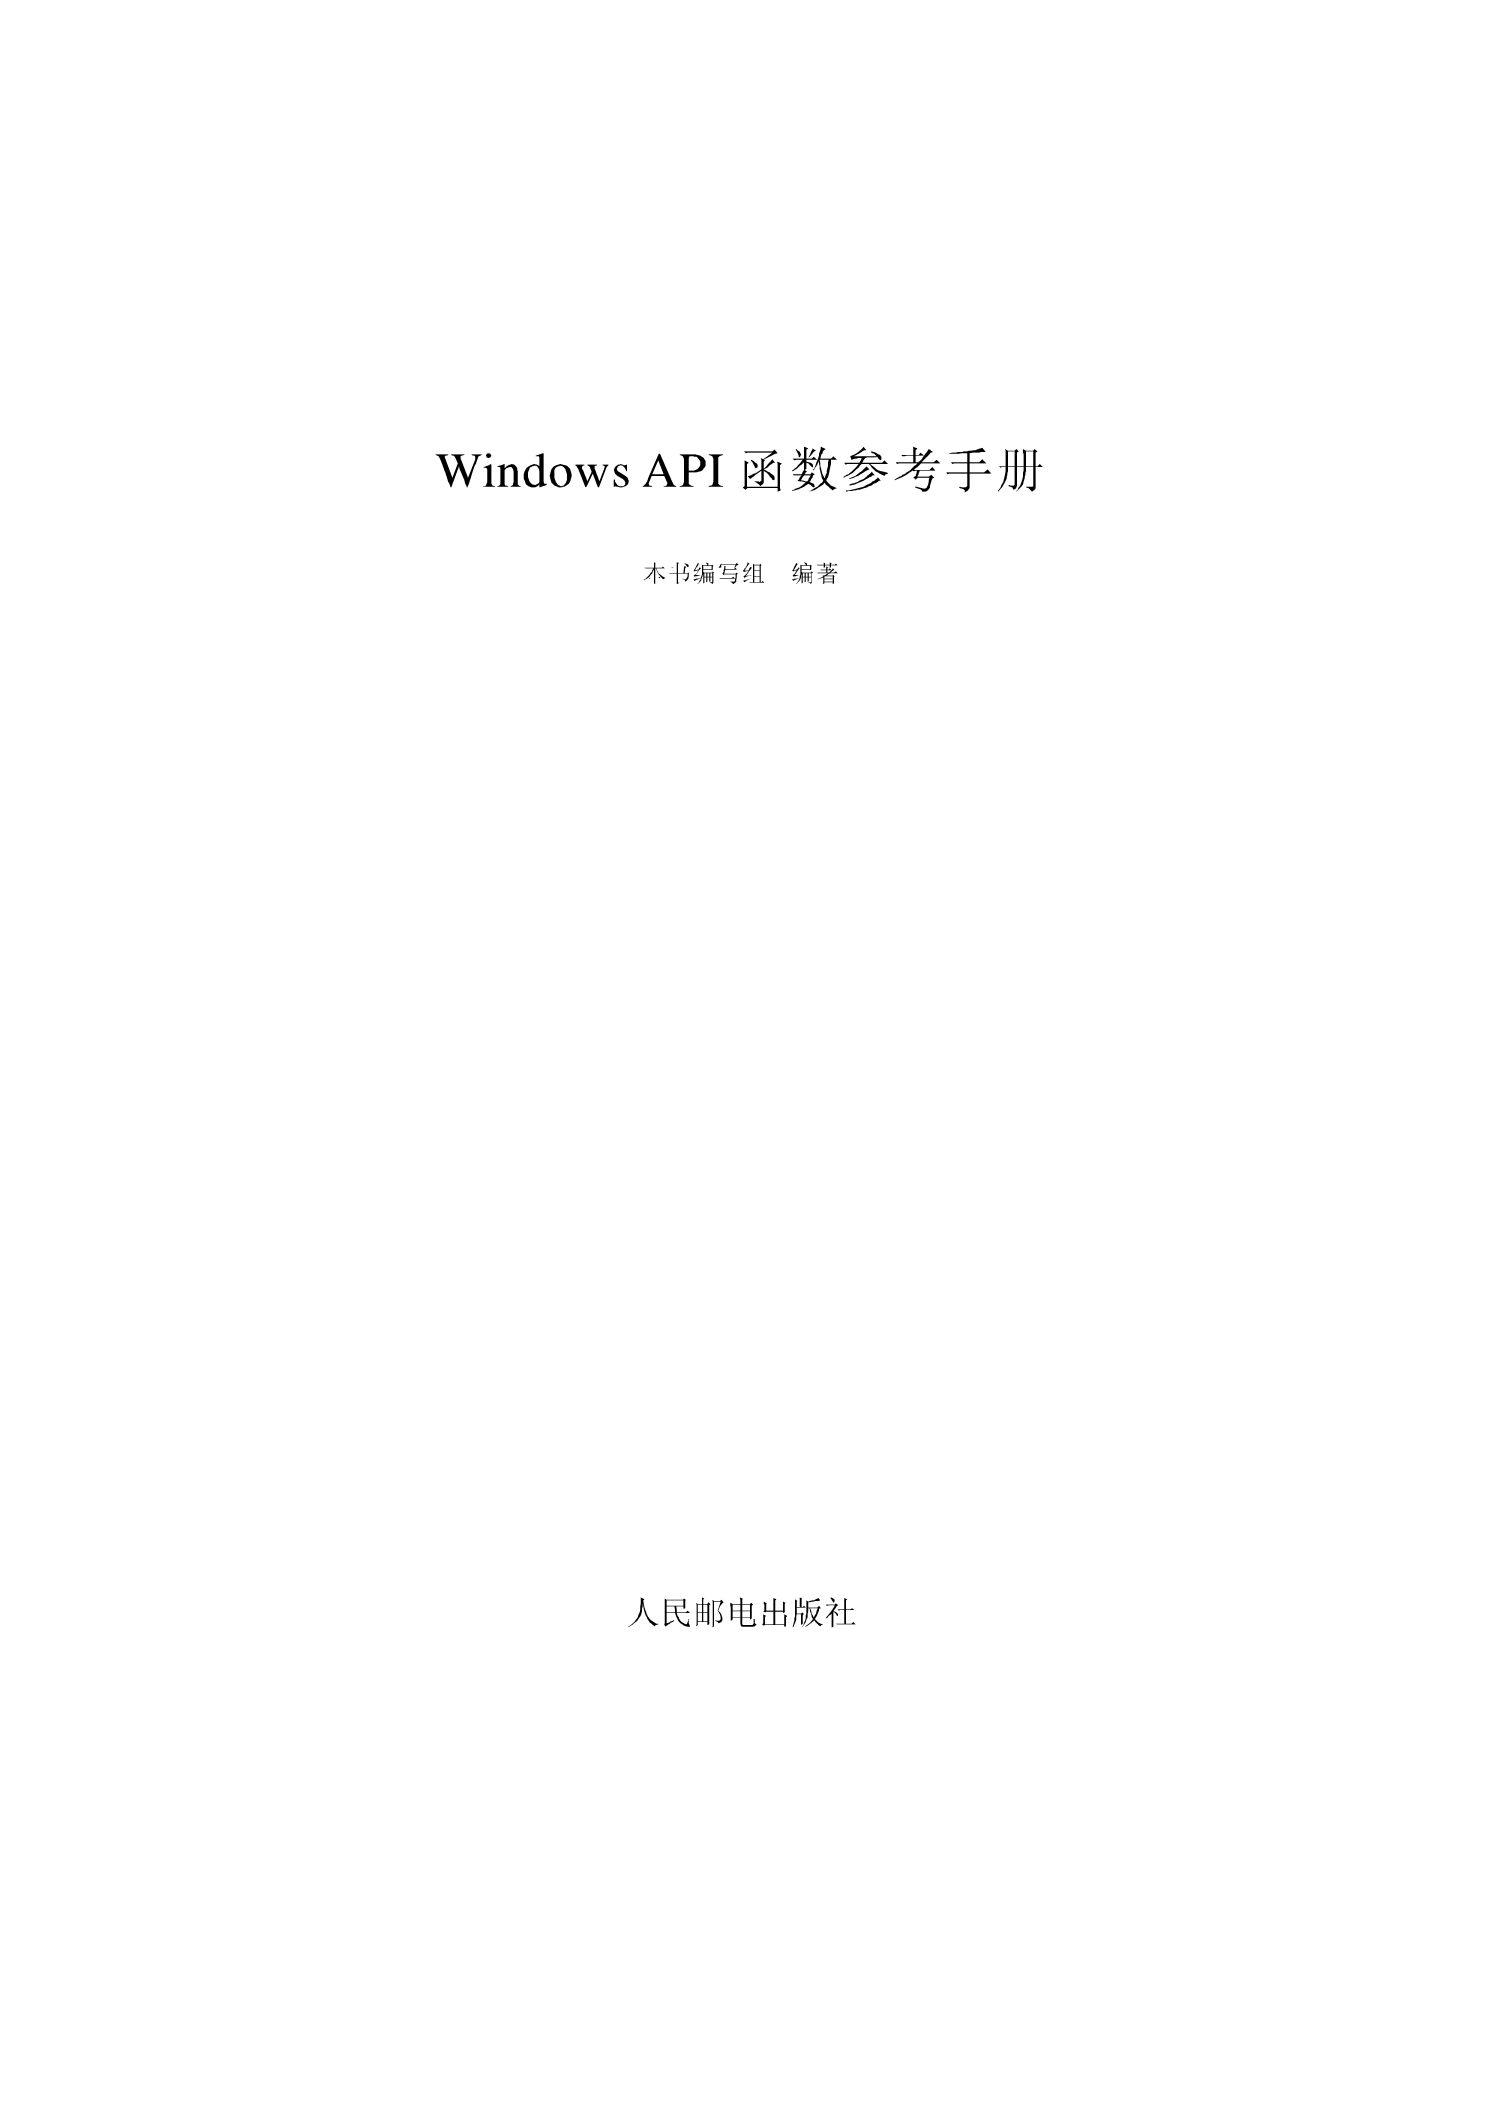 WindowsAPI函数参考手册